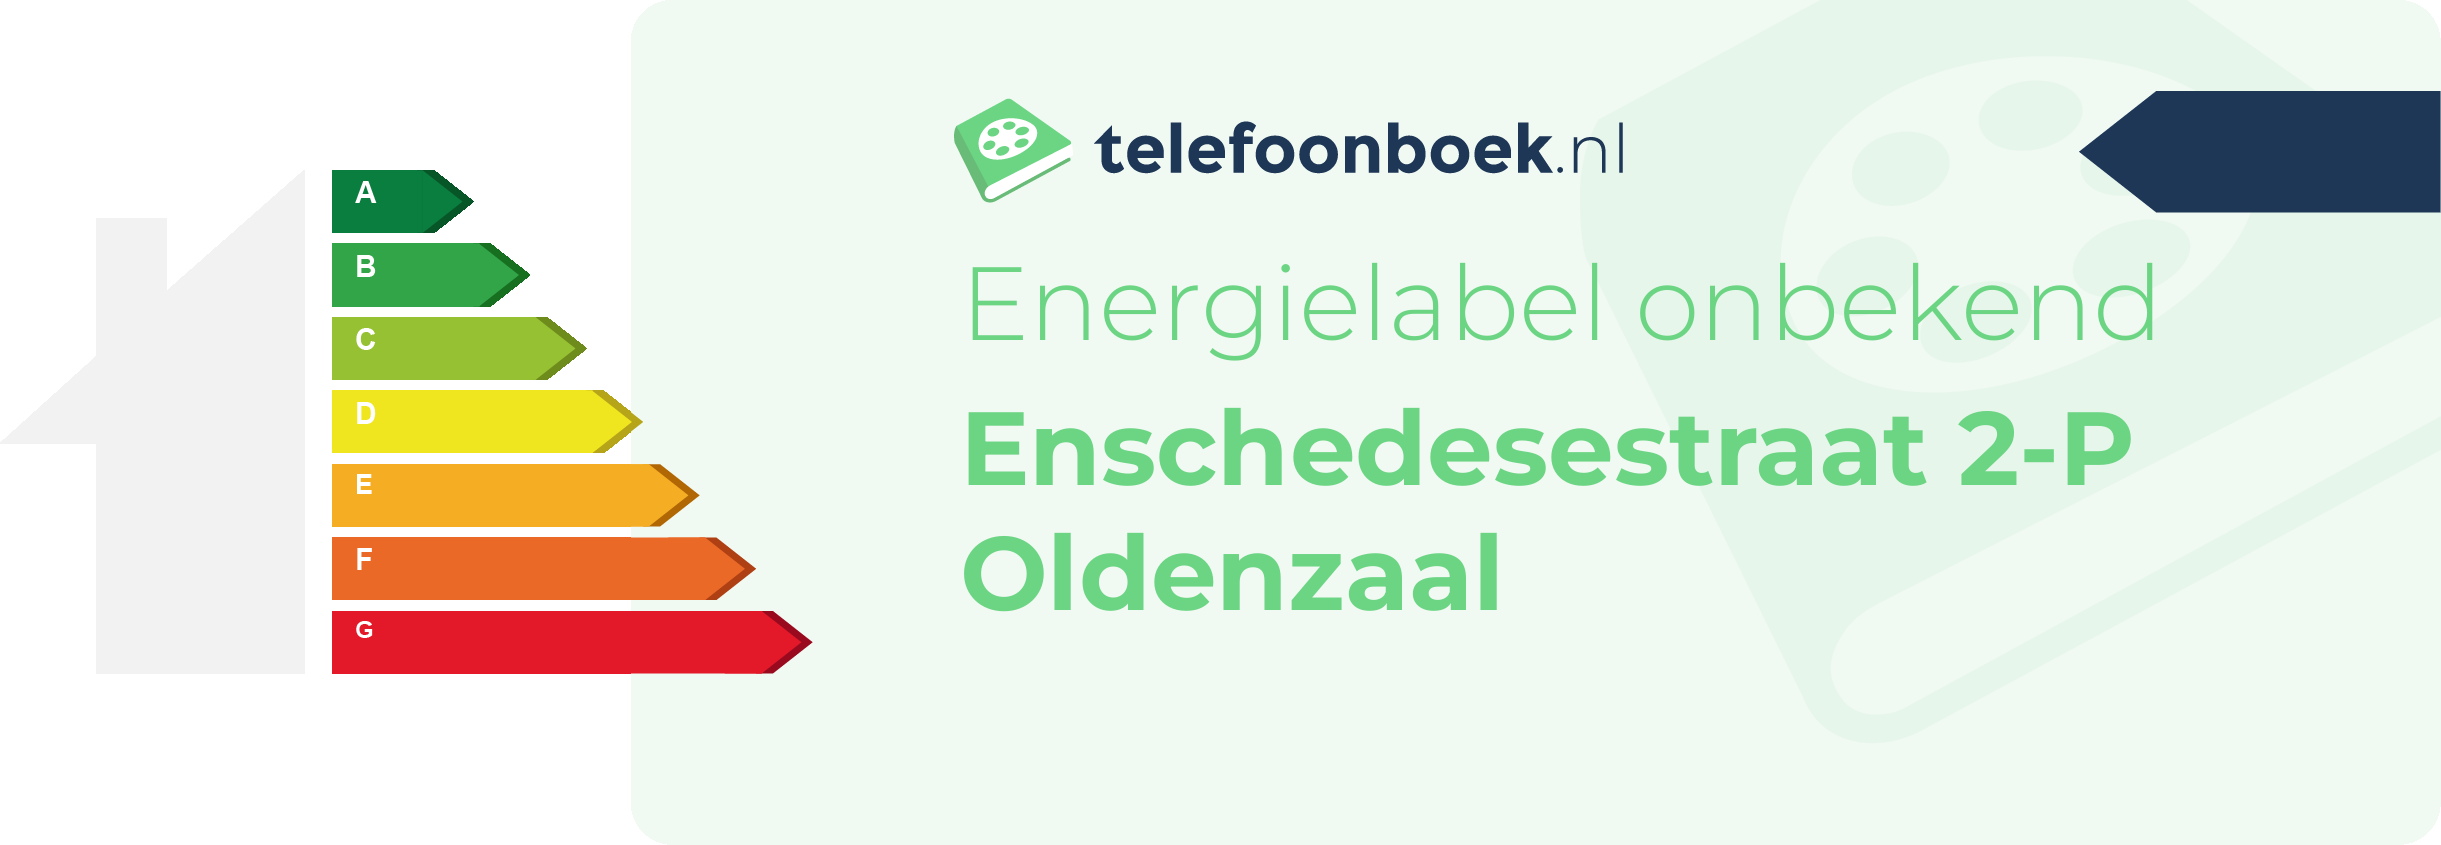 Energielabel Enschedesestraat 2-P Oldenzaal